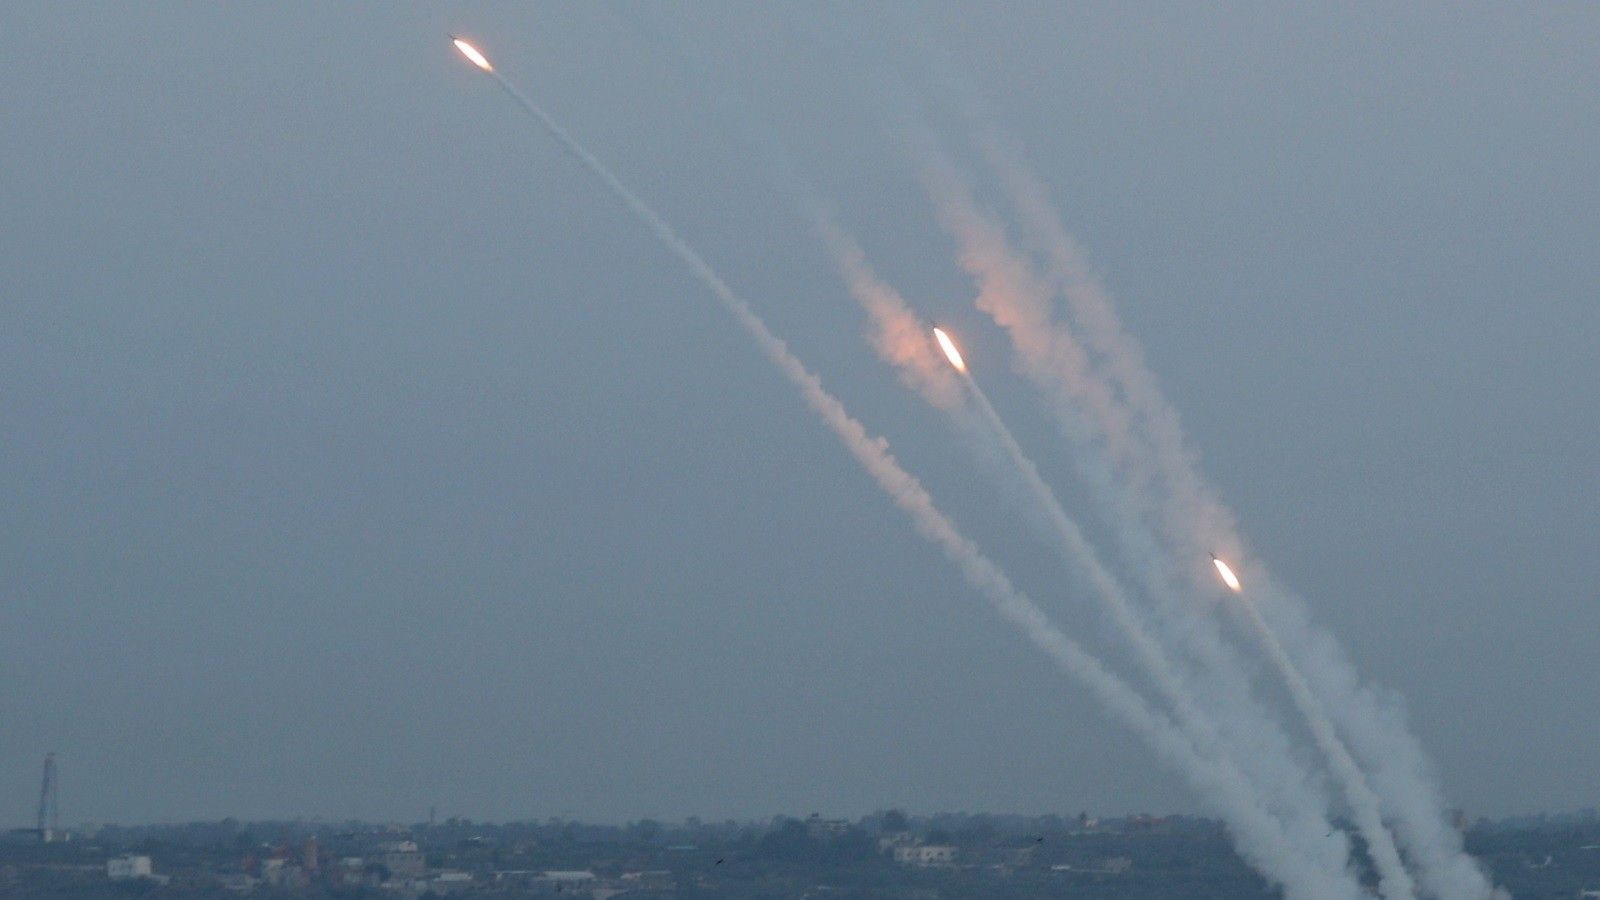 تجارب صاروخية جديدة  للمقاومة الفلسطينية صوب بحر غزة .